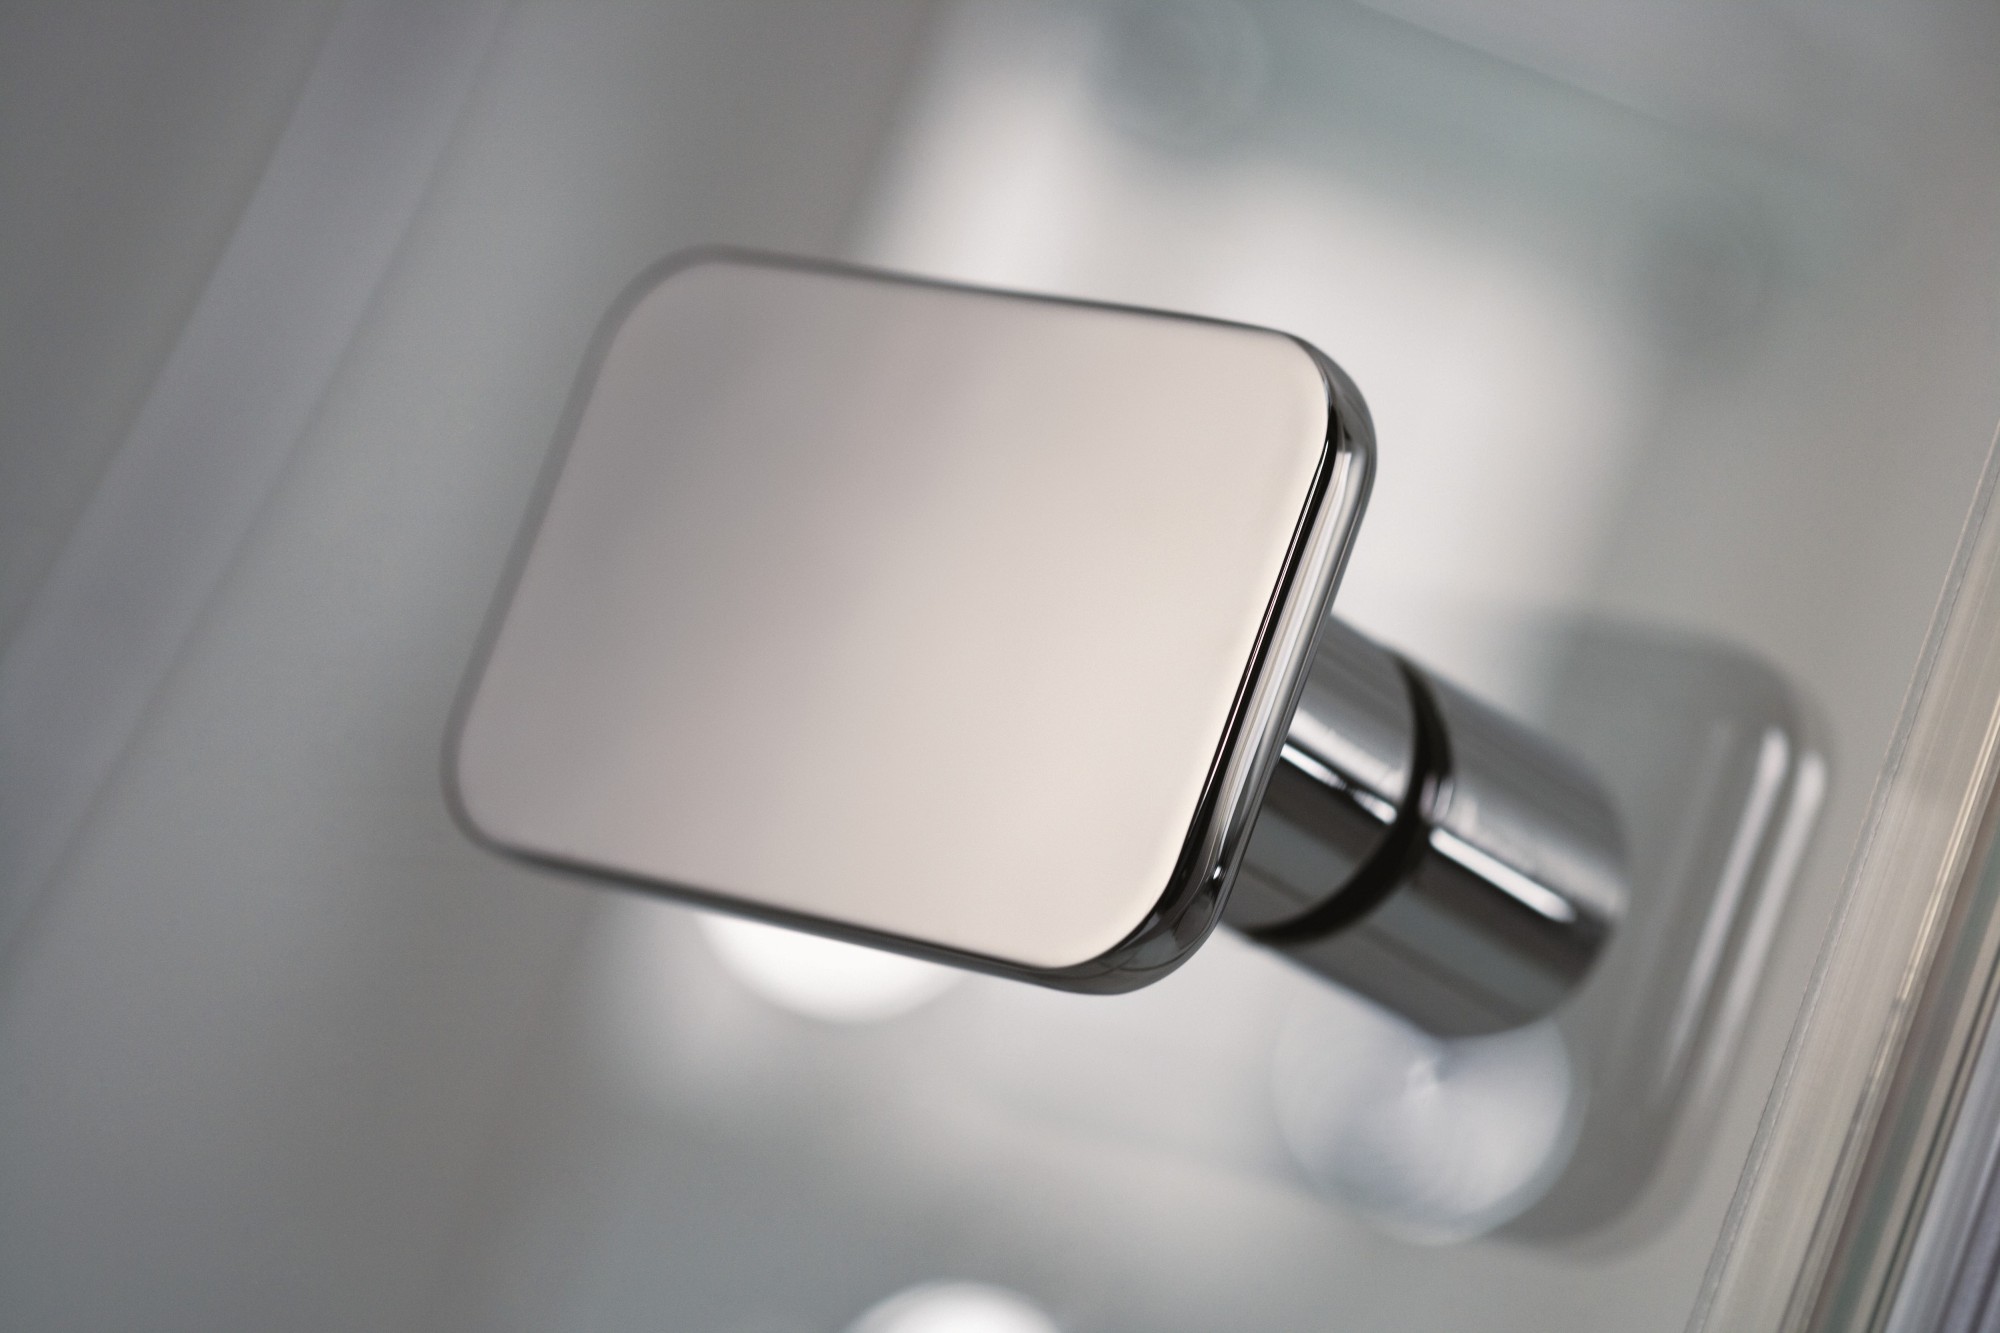 HSK teilgerahmte Runddusche pendelbar „Premium Softcube“ in Glas Klar hell, H: 2000 mm